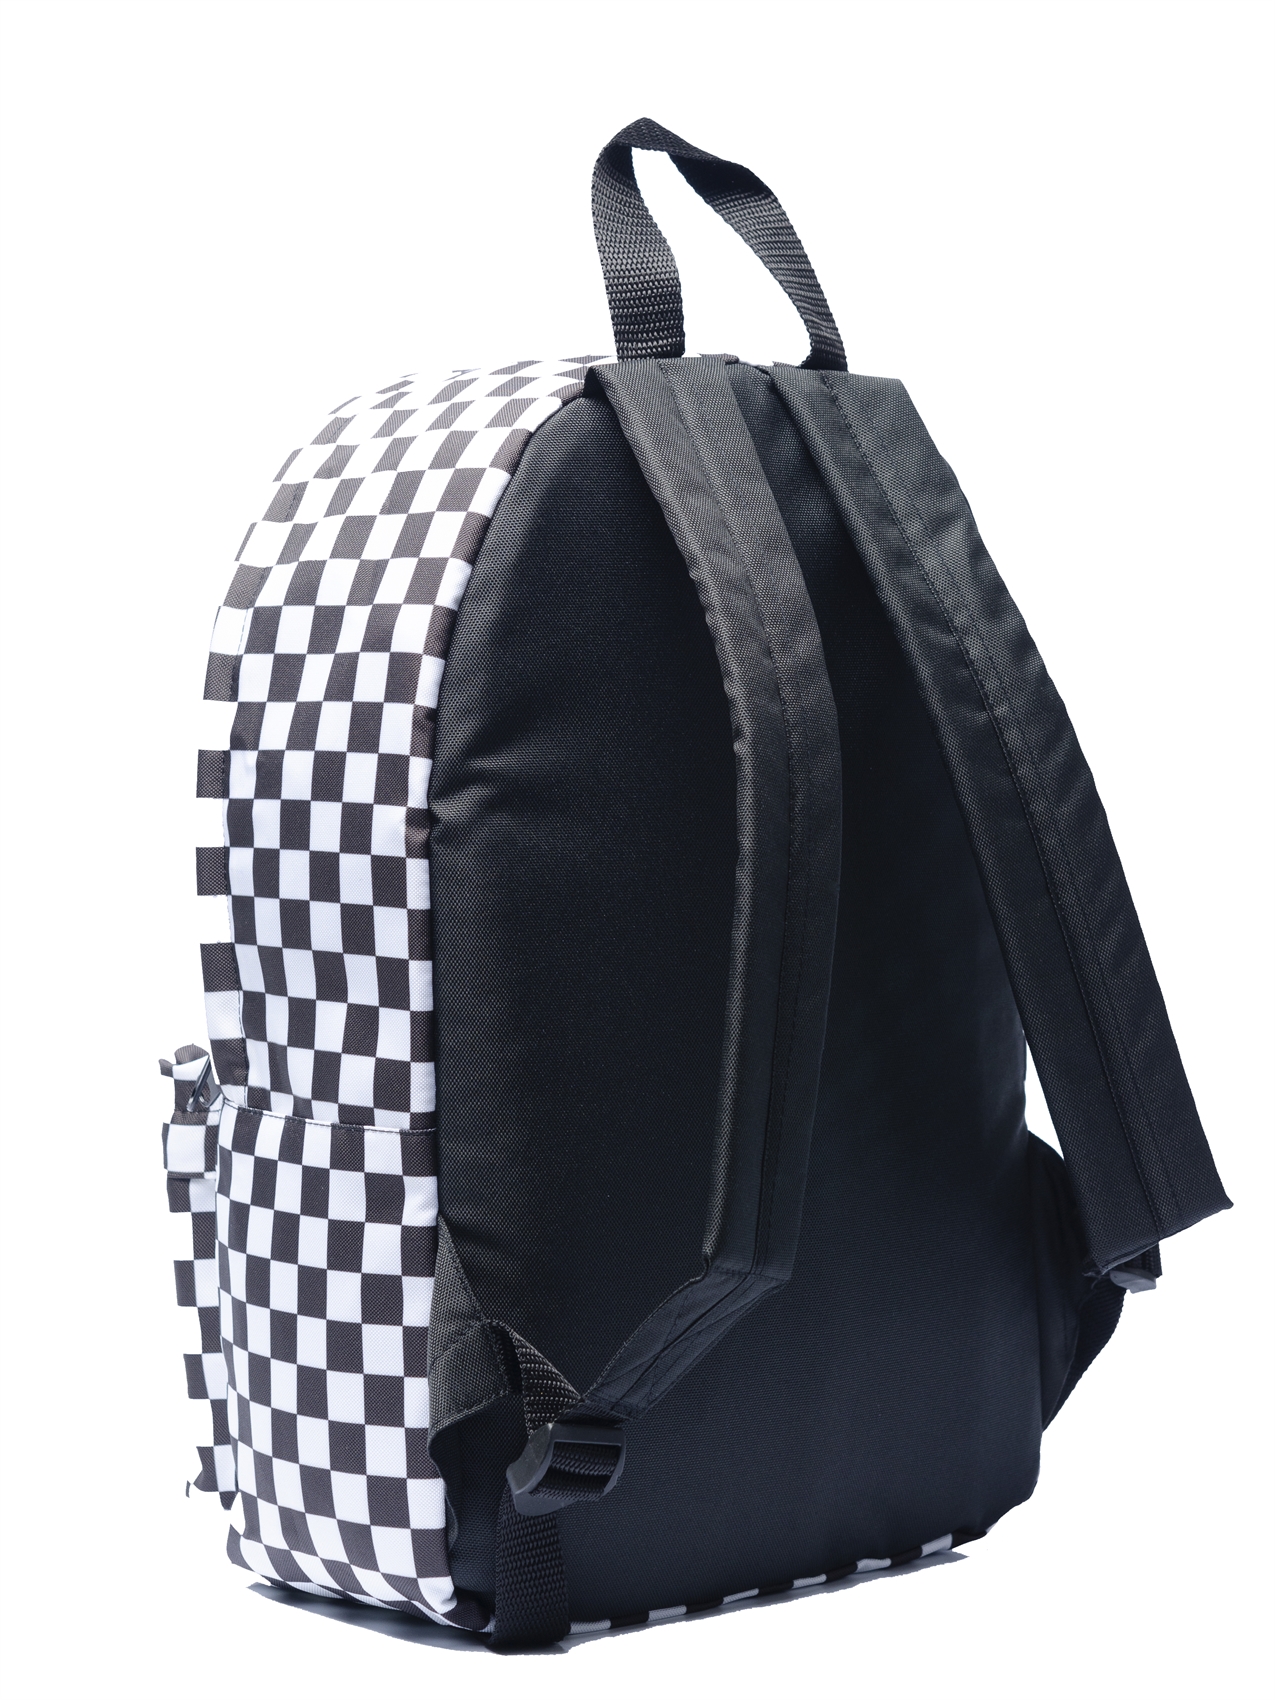 Рюкзак Oldy принт (черный, шашка) - фото 37808